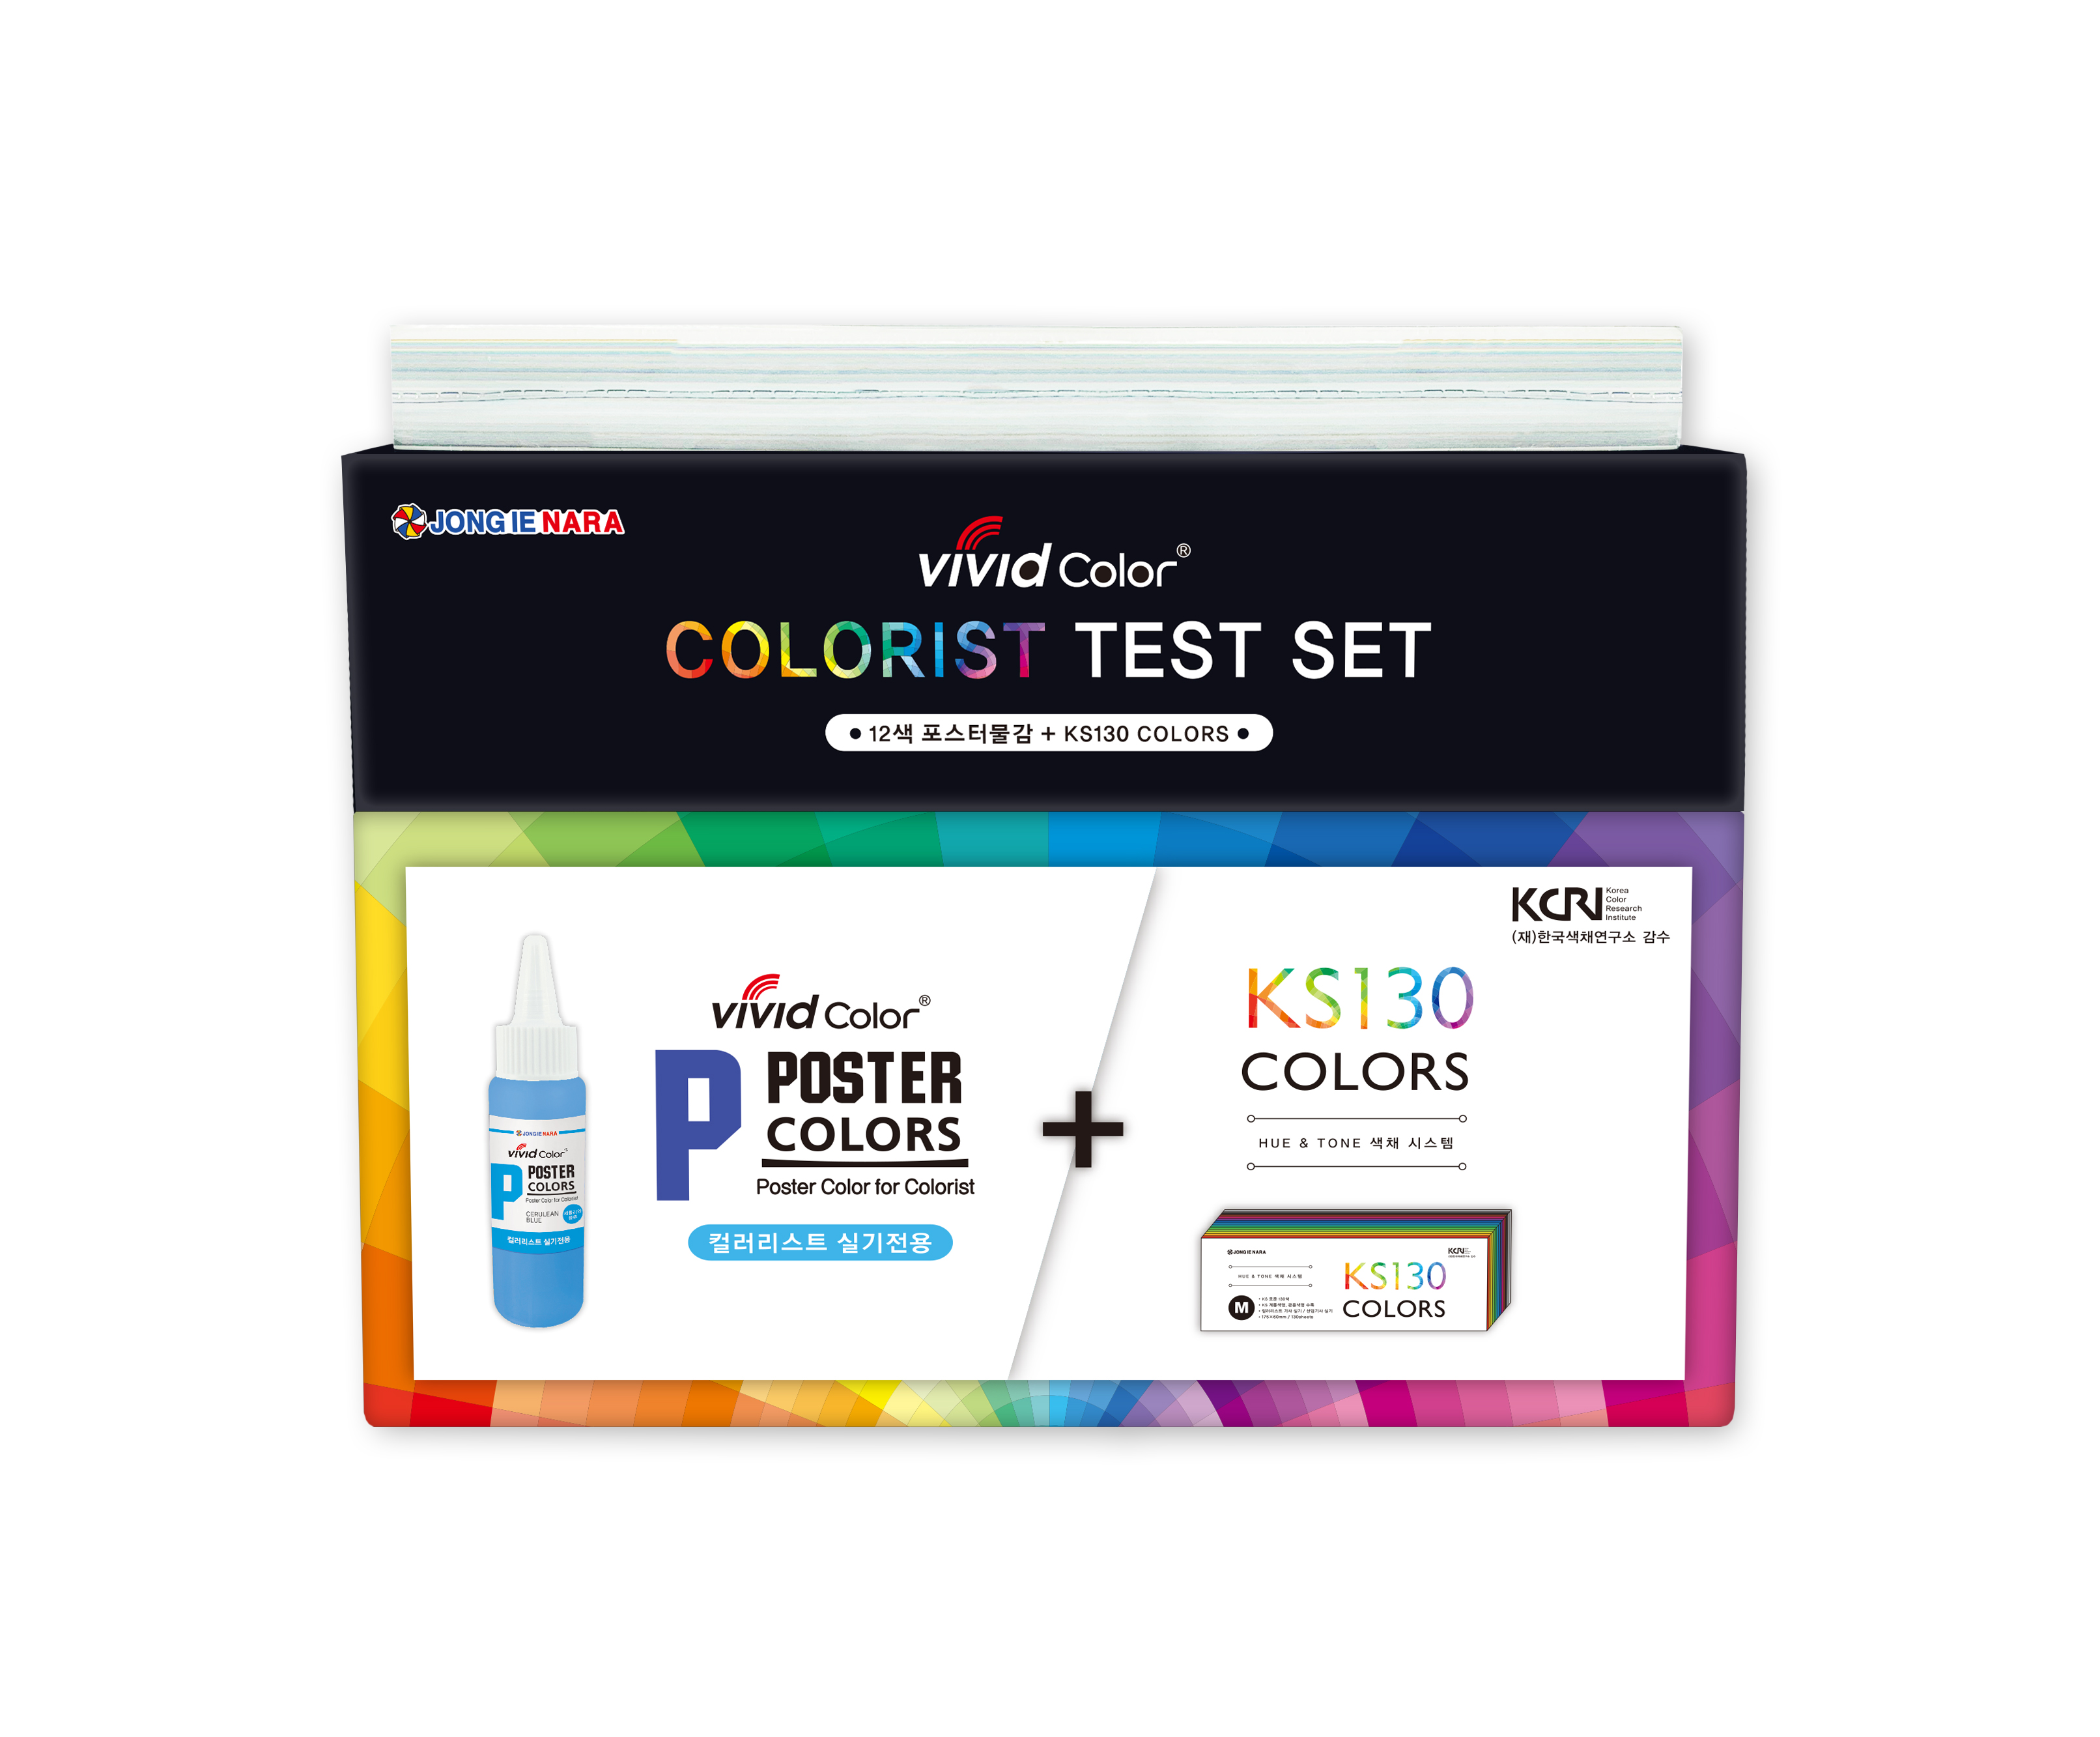 Colorist Test Set